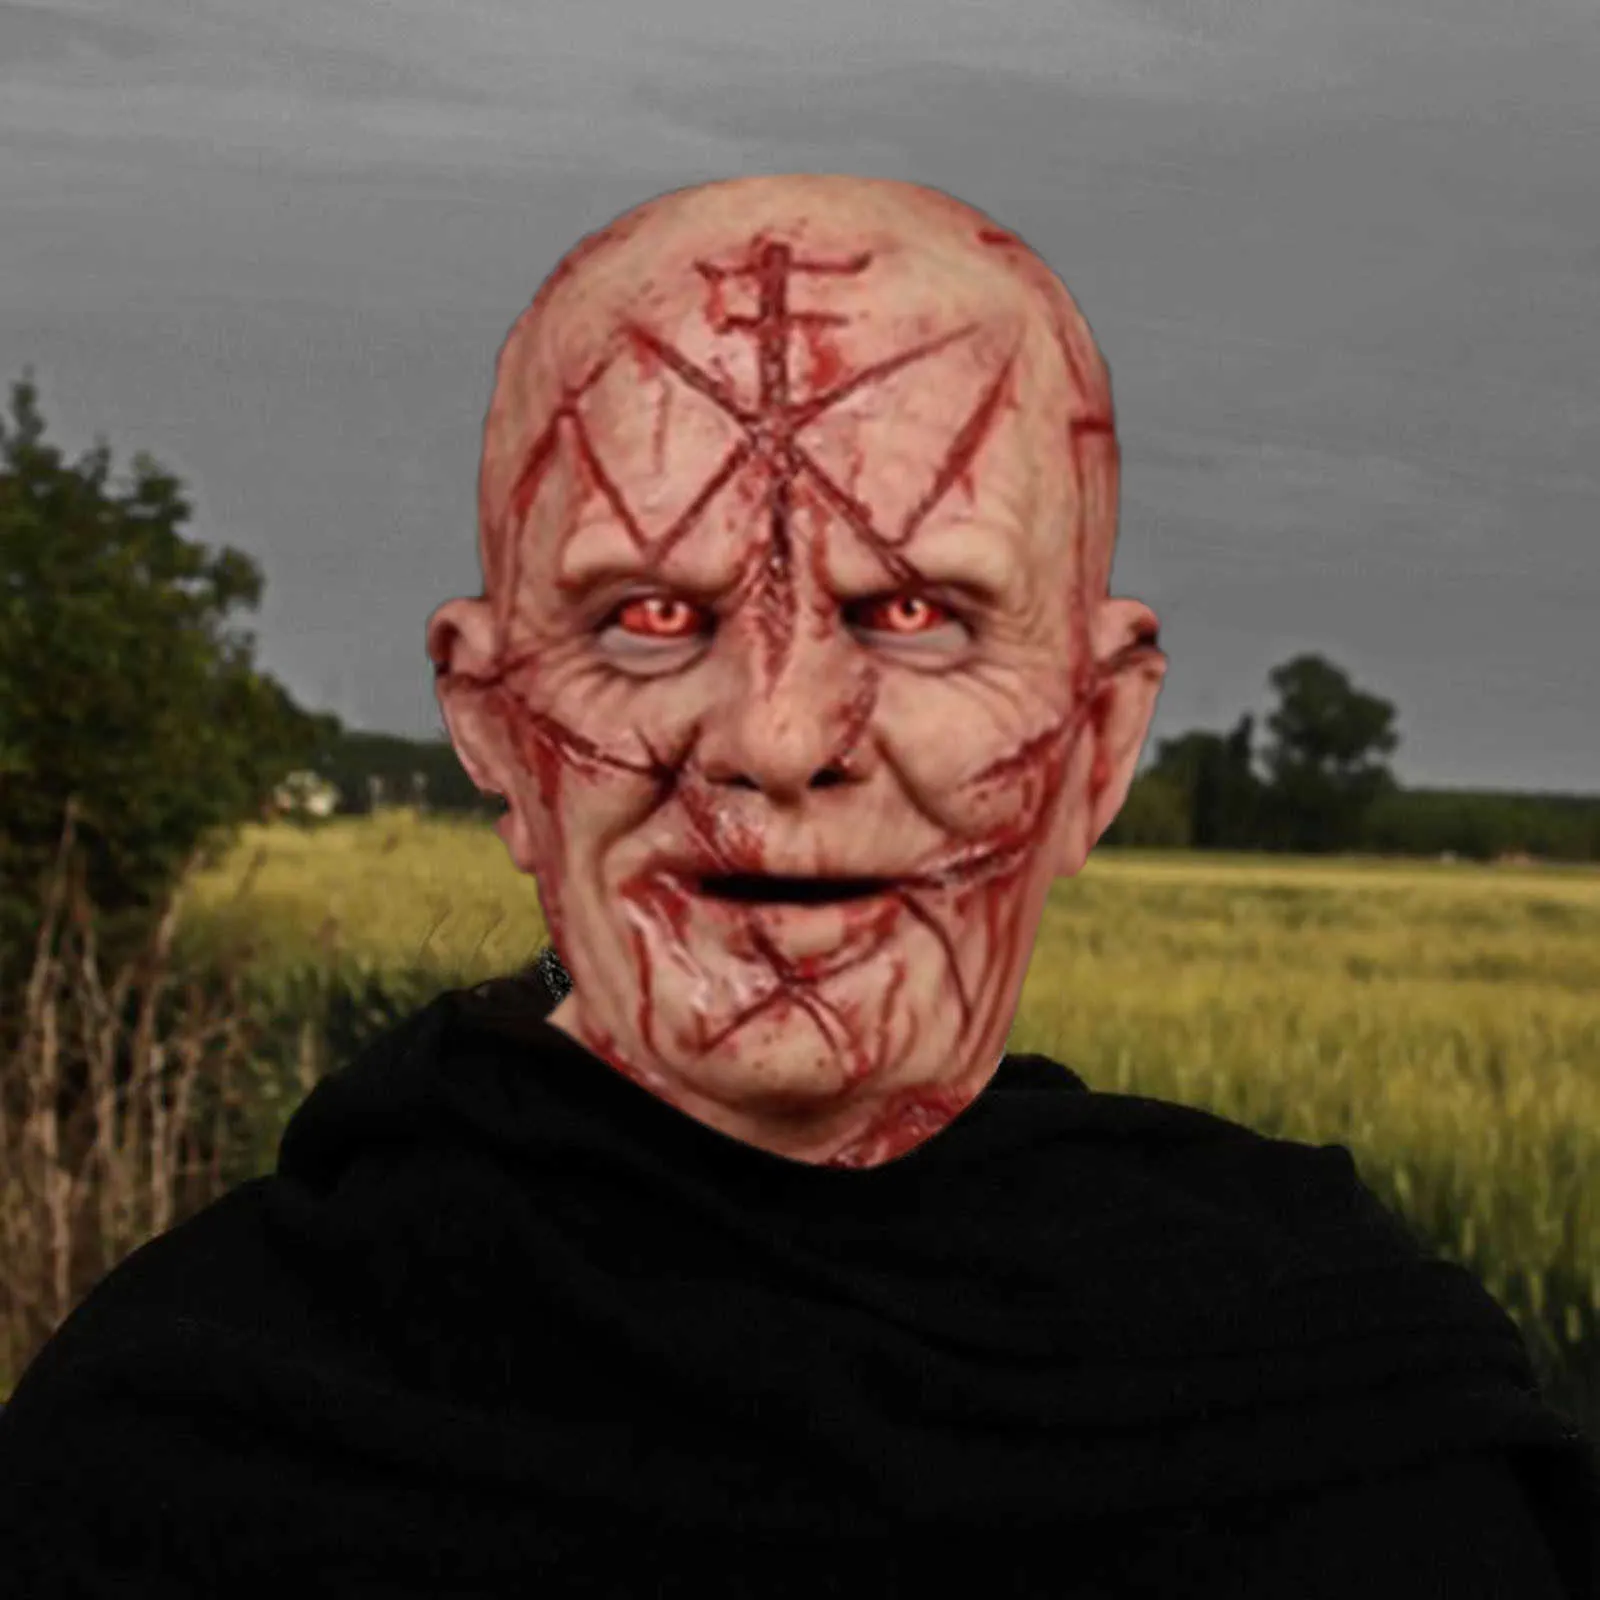 Enge kale bloed litteken masker horror bloedige hoofddeksels 3D realistische menselijke gezicht emulsie latex volwassenen ademend Masque H0910